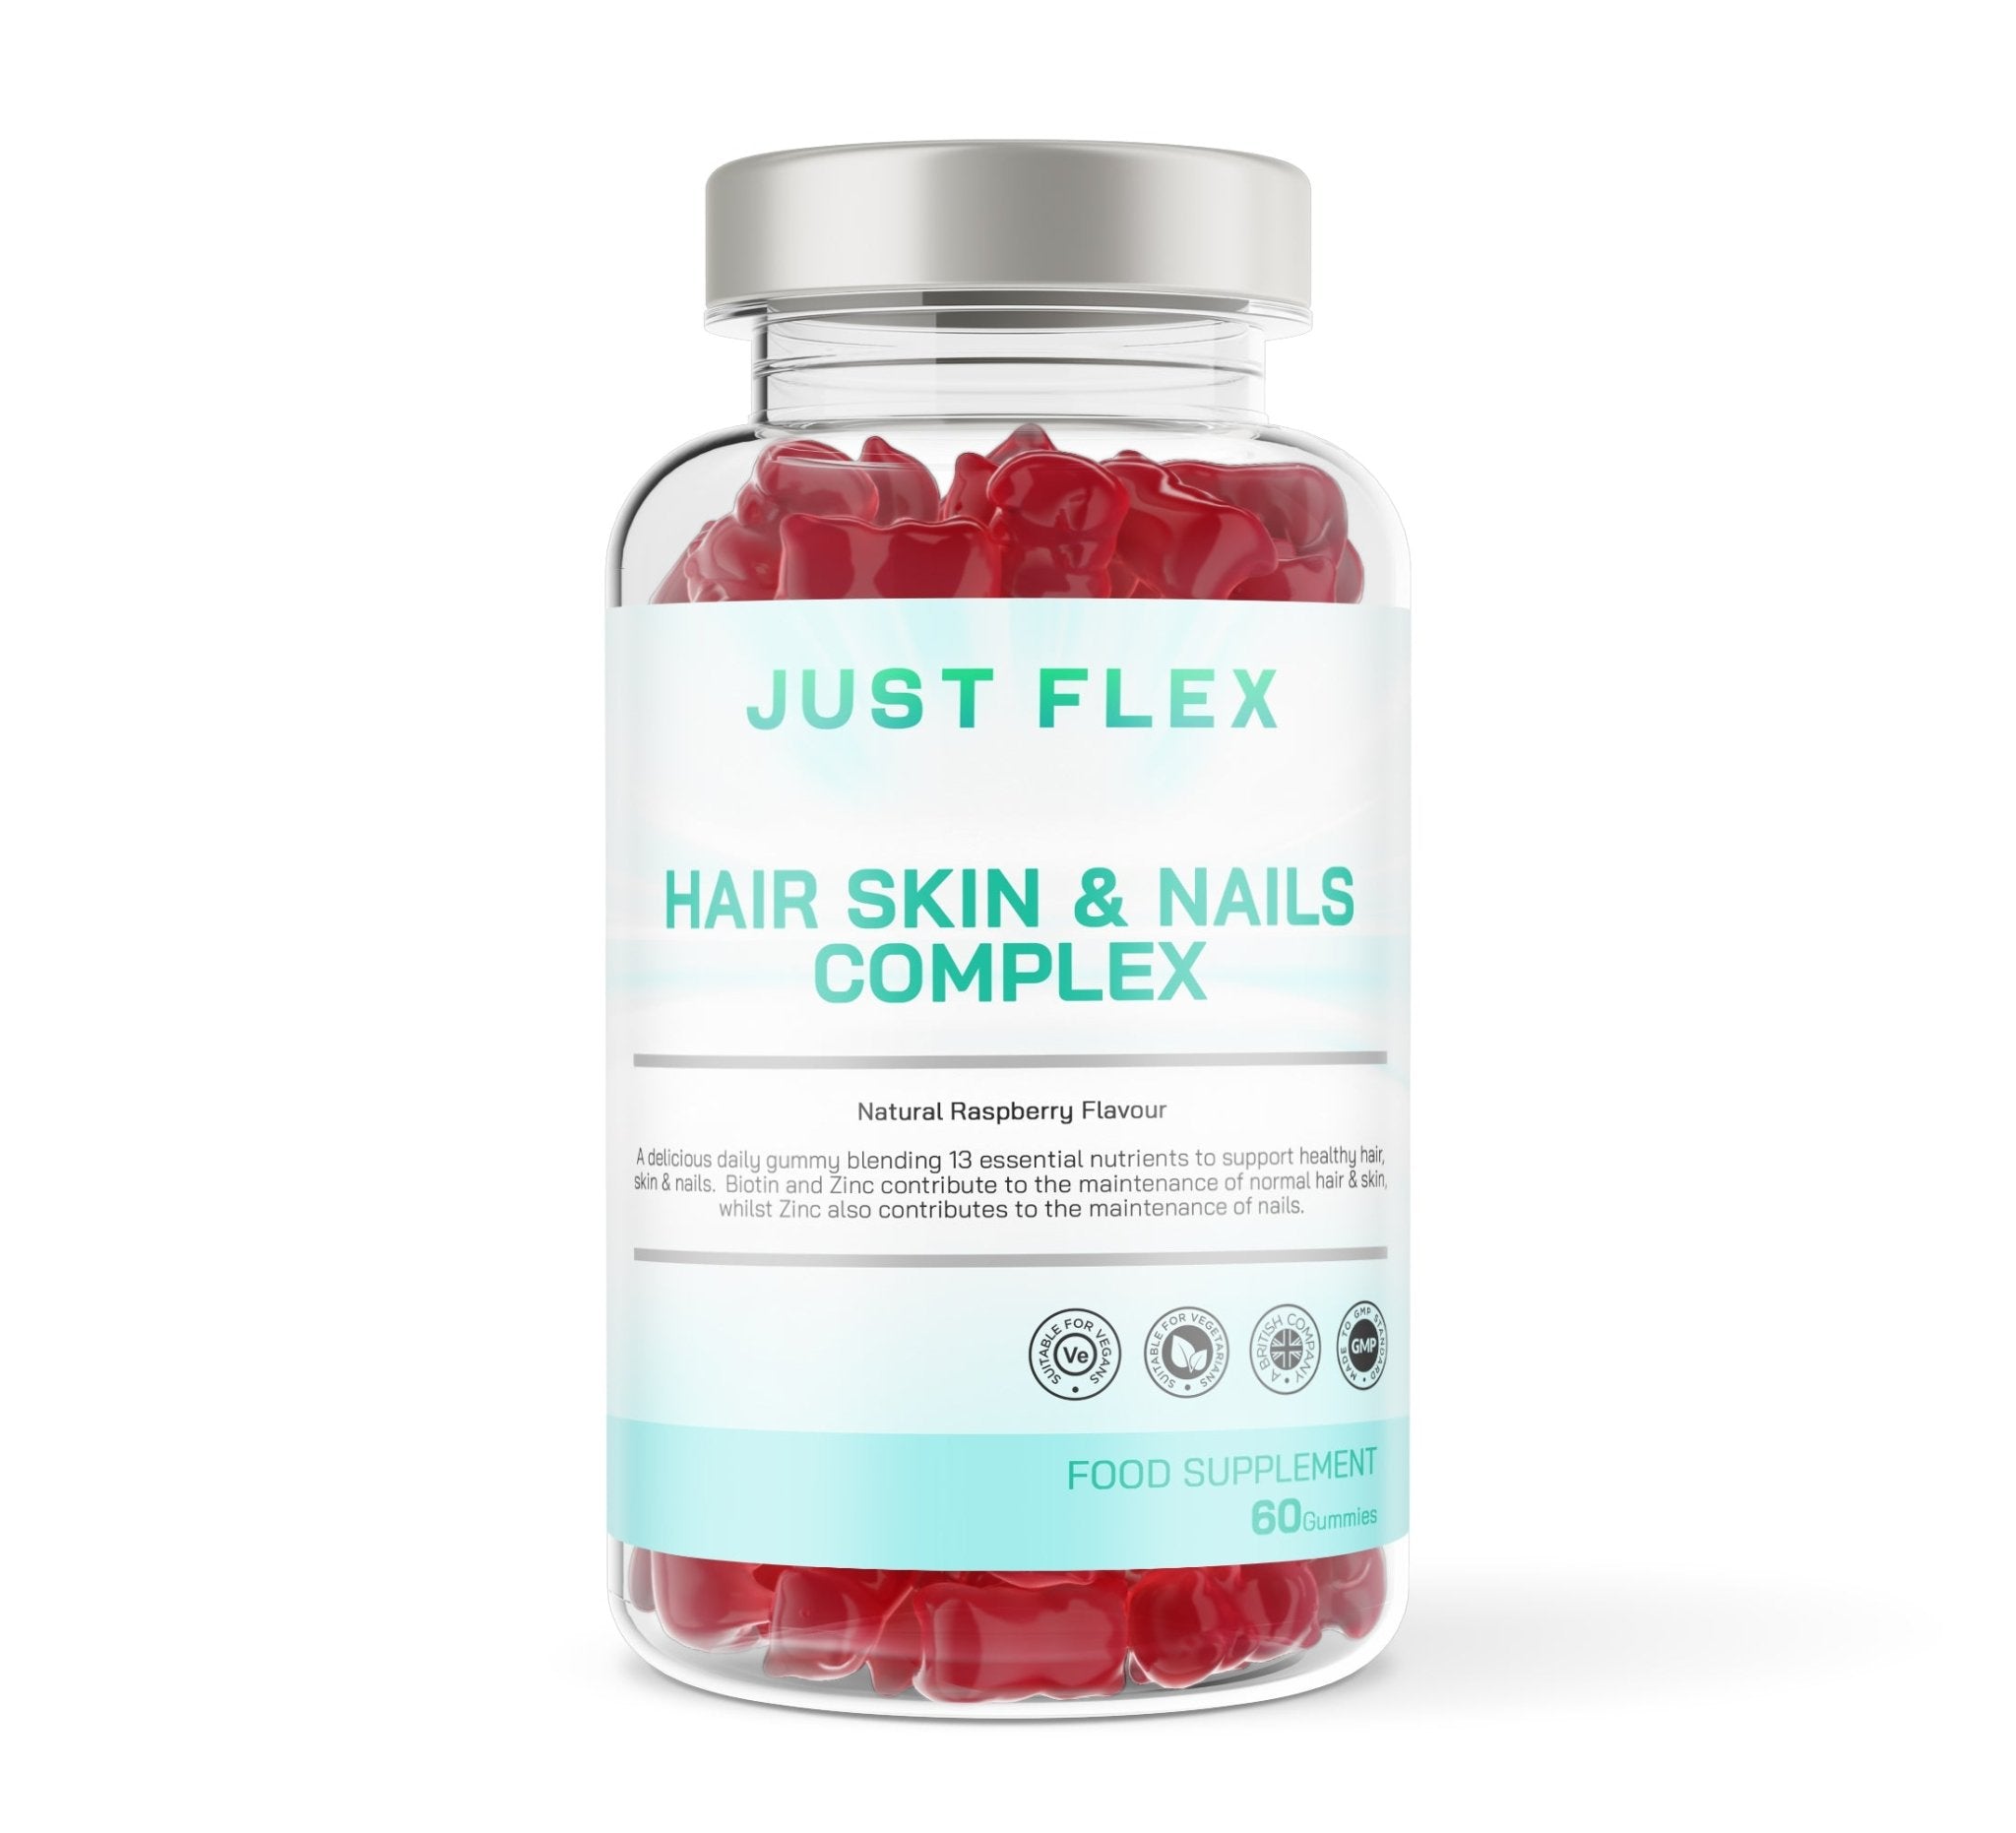 Just Flex Hair Skin & Nails Complex - 60 Natural Raspberry Flavour Gummies